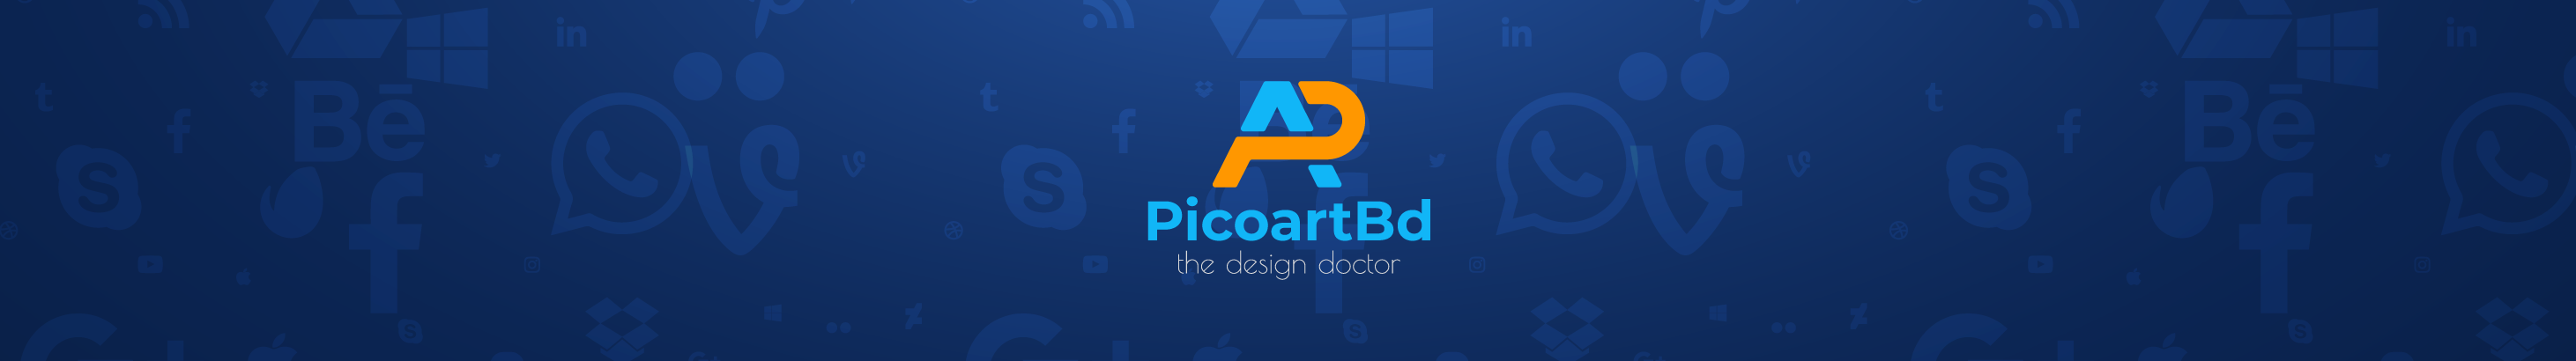 Picoart Bds profilbanner